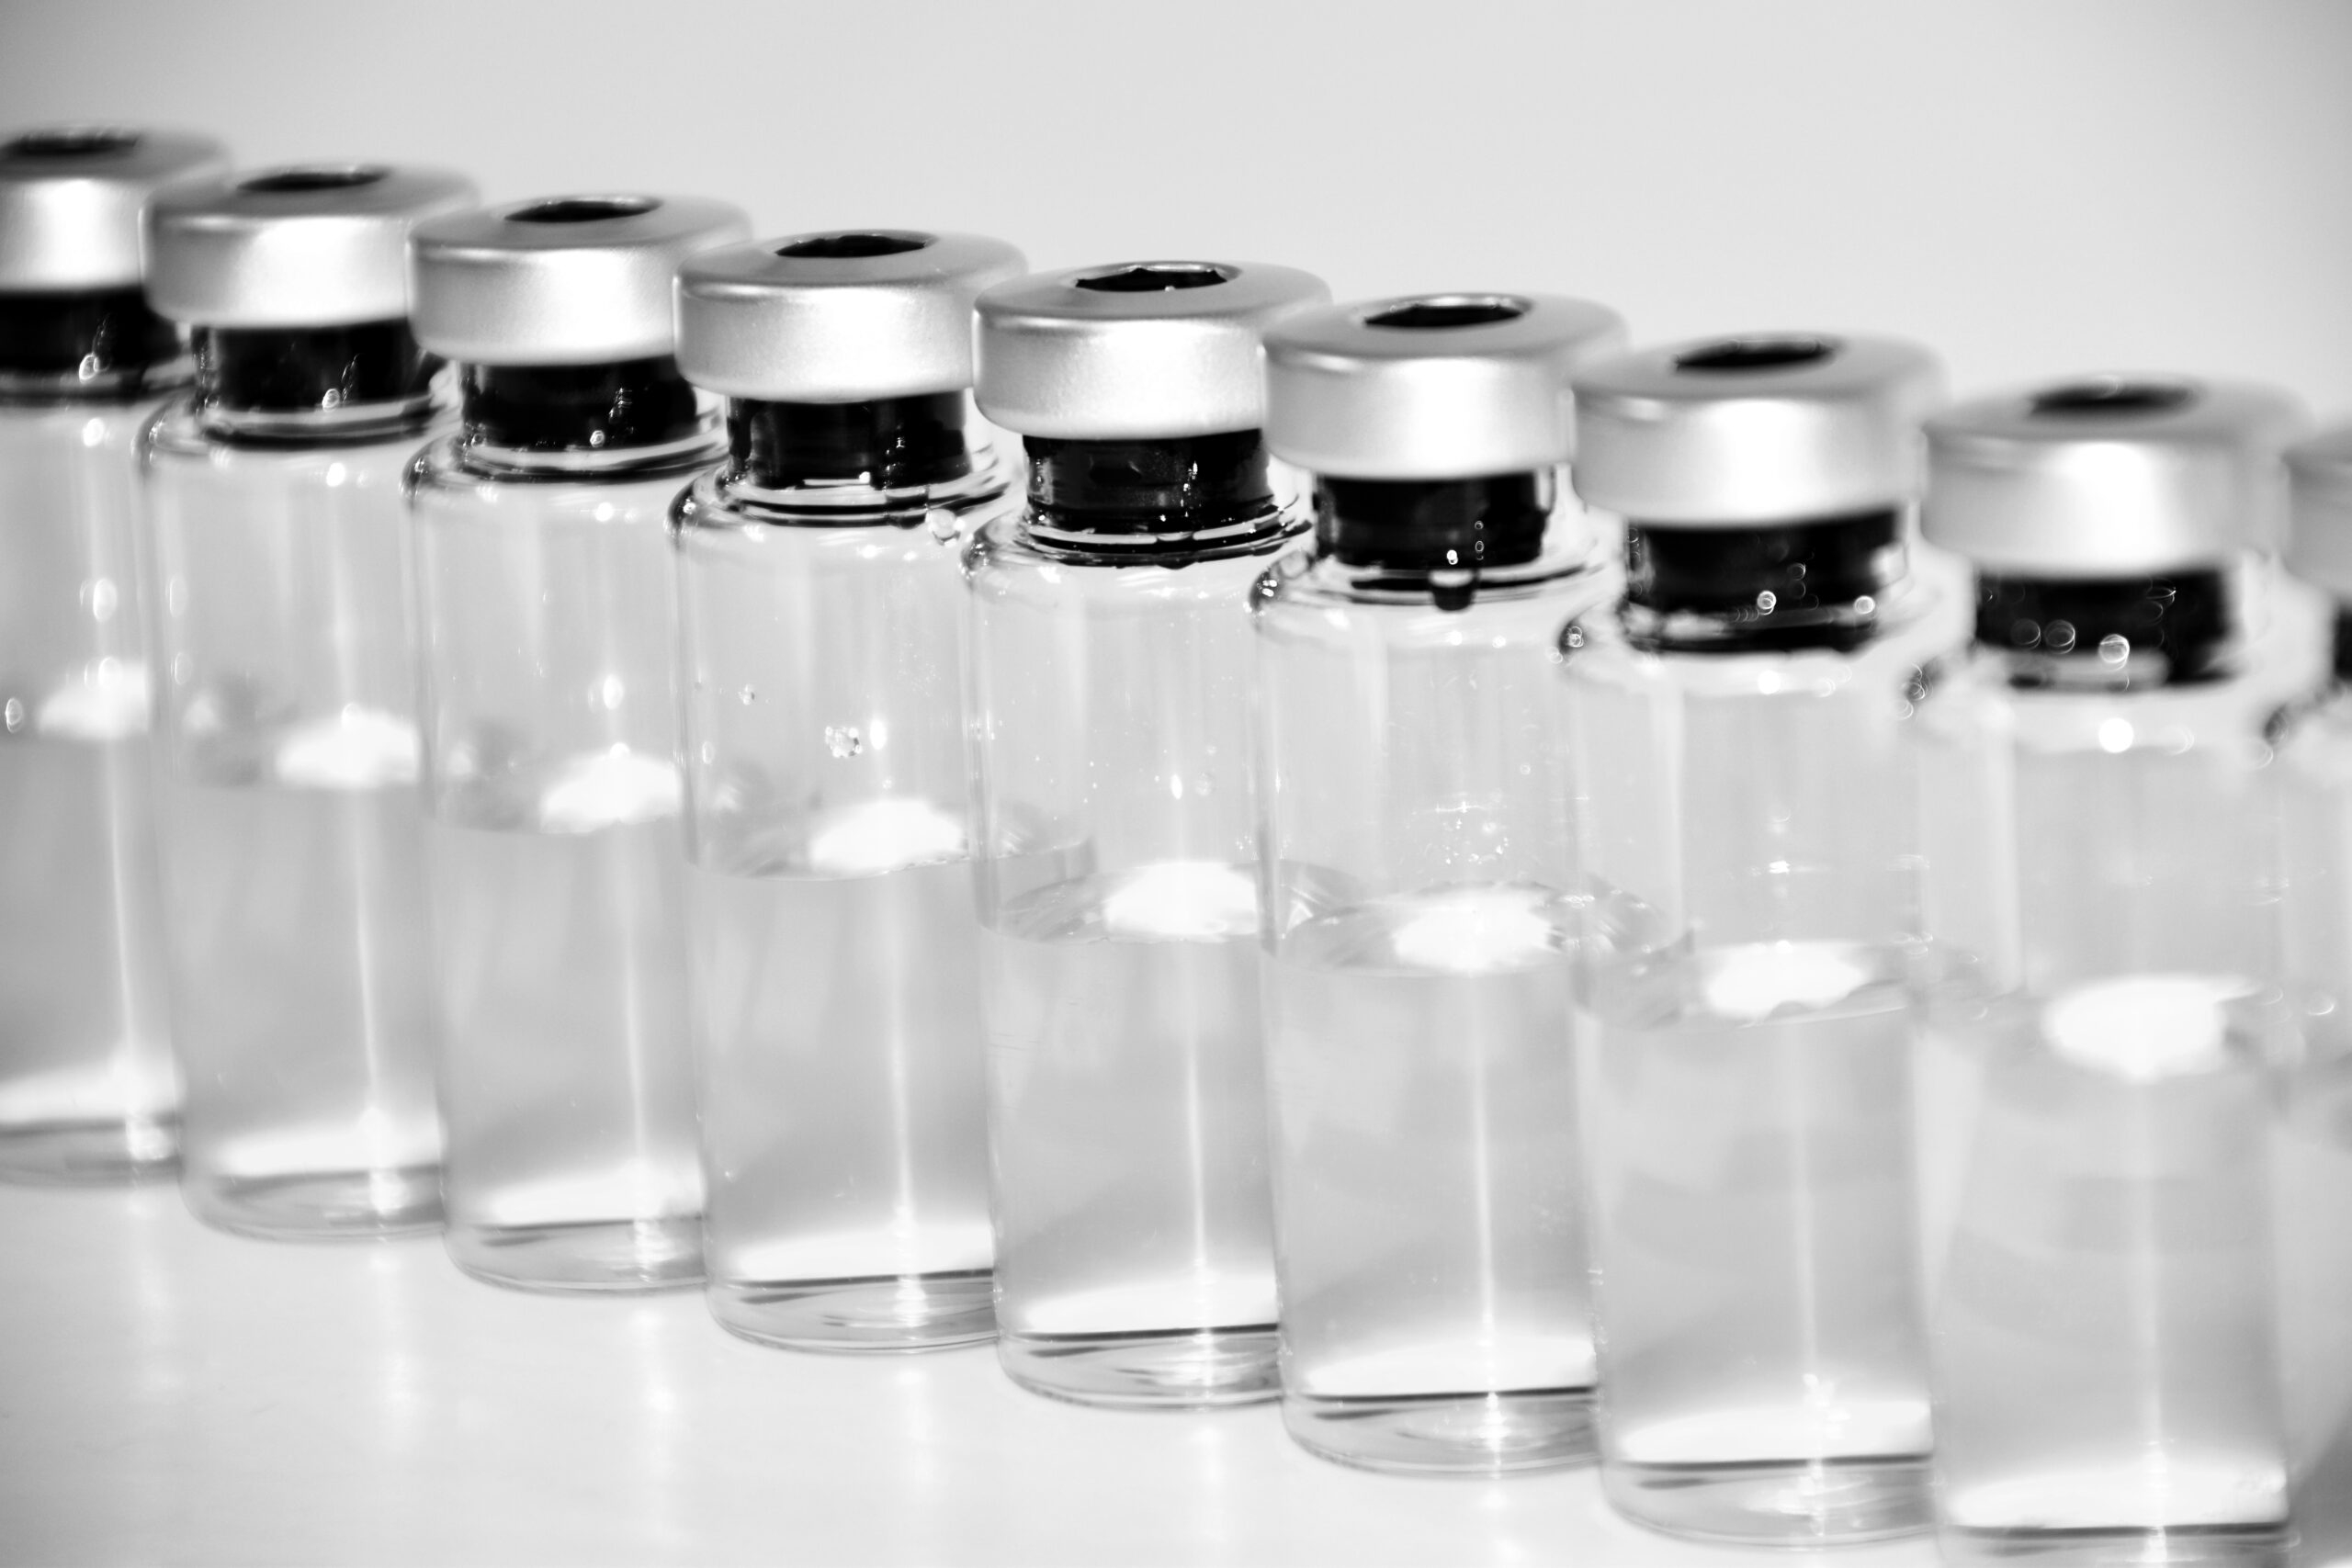 Обновленная вакцина от коронавируса станет доступна уже в декабре